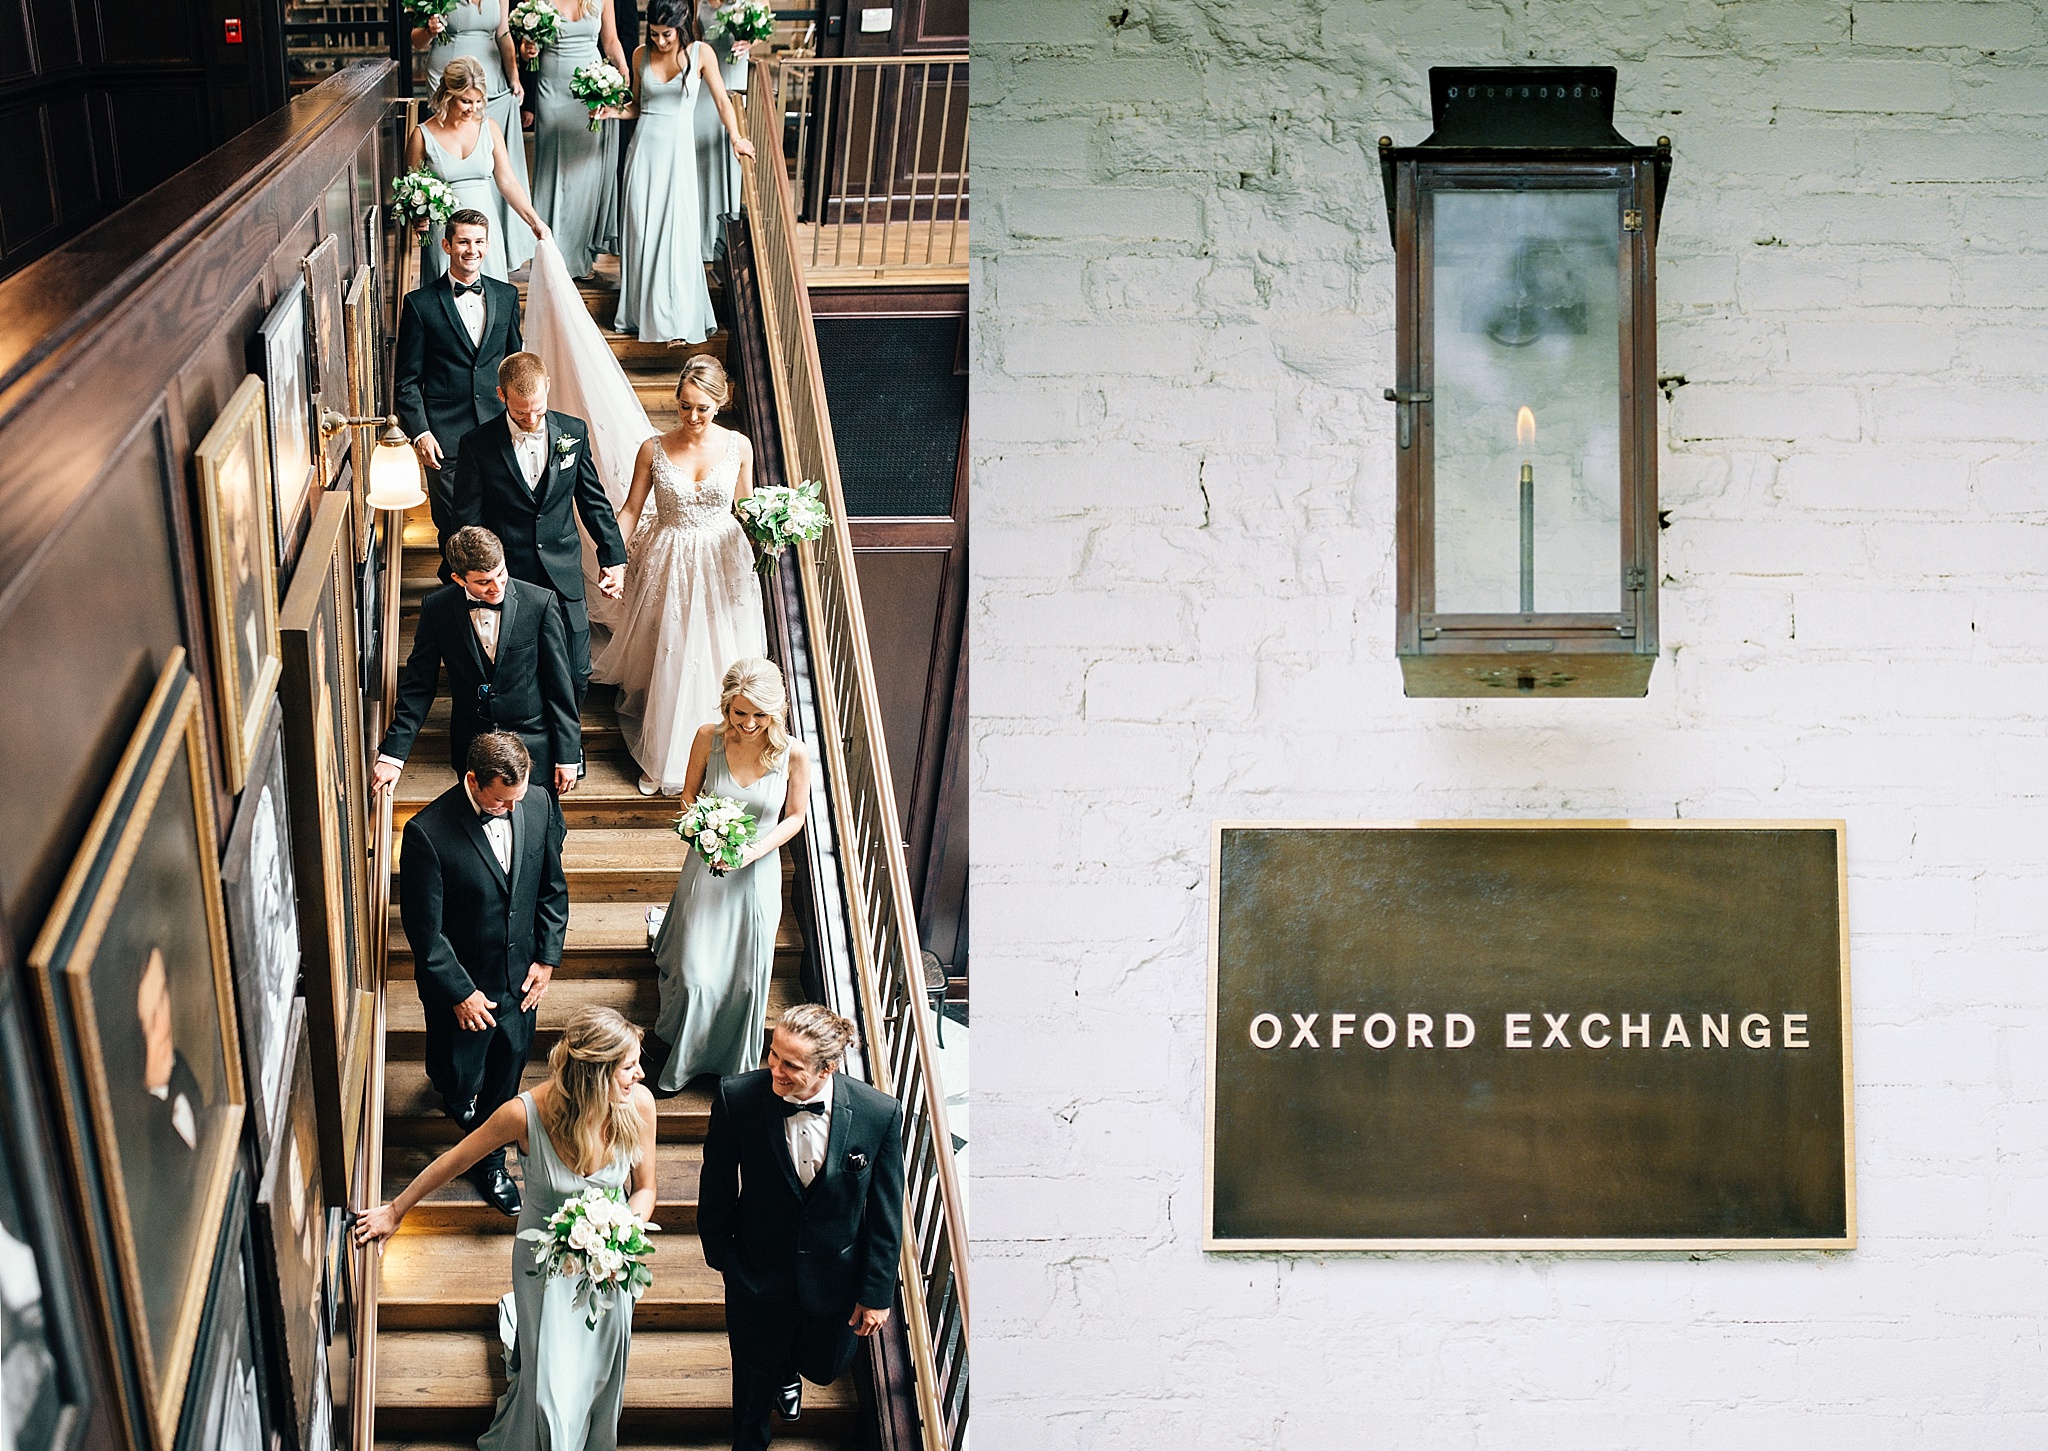 Tampa Oxford Exchange Wedding, Tampa Wedding Photographer, Oxford Exchange Wedding, Sarasota Photographer